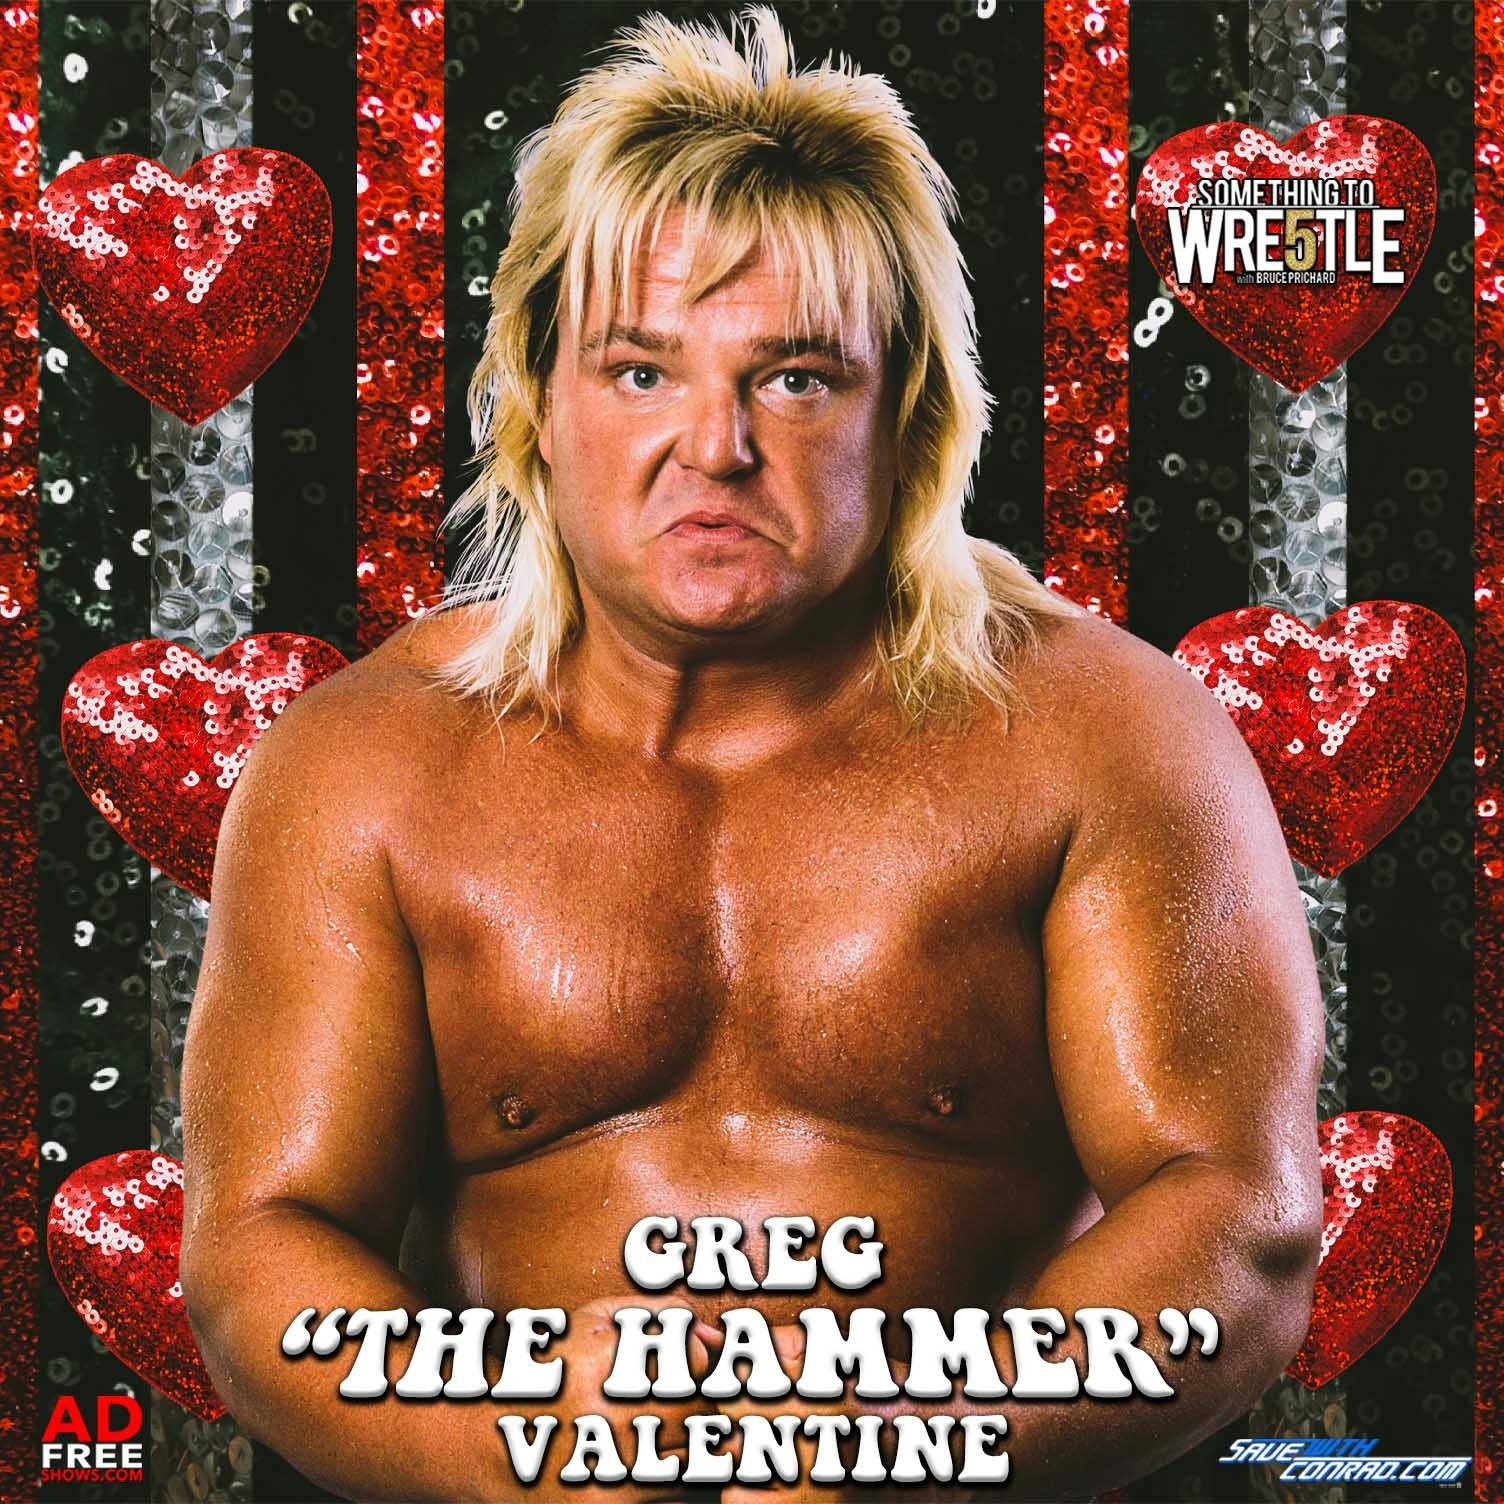 Episode 288: Greg ”The Hammer” Valentine